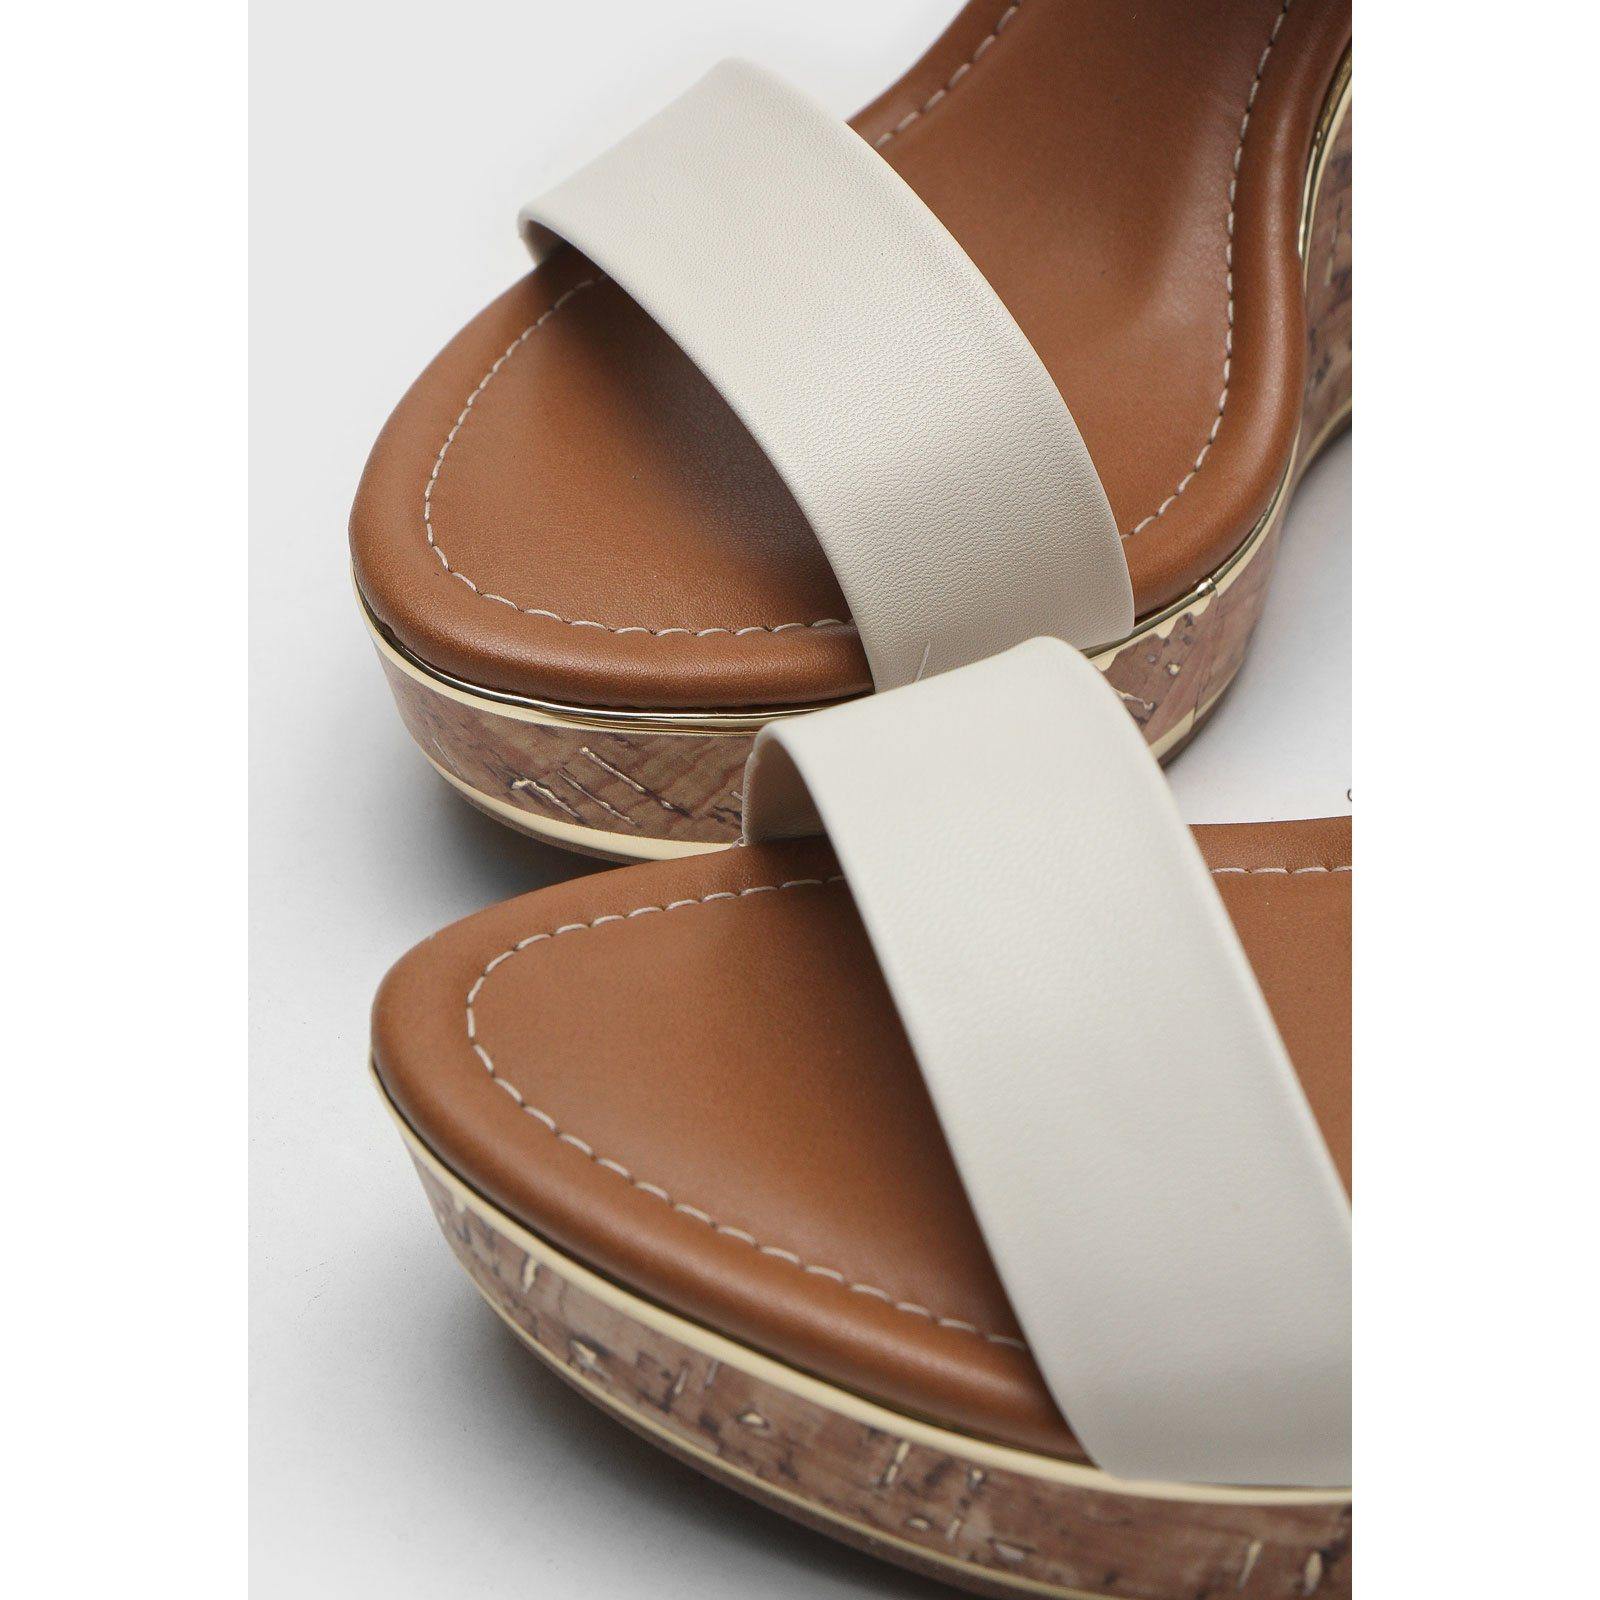 Vizzano 6283-4700 Wedge Sandal in Off White Napa